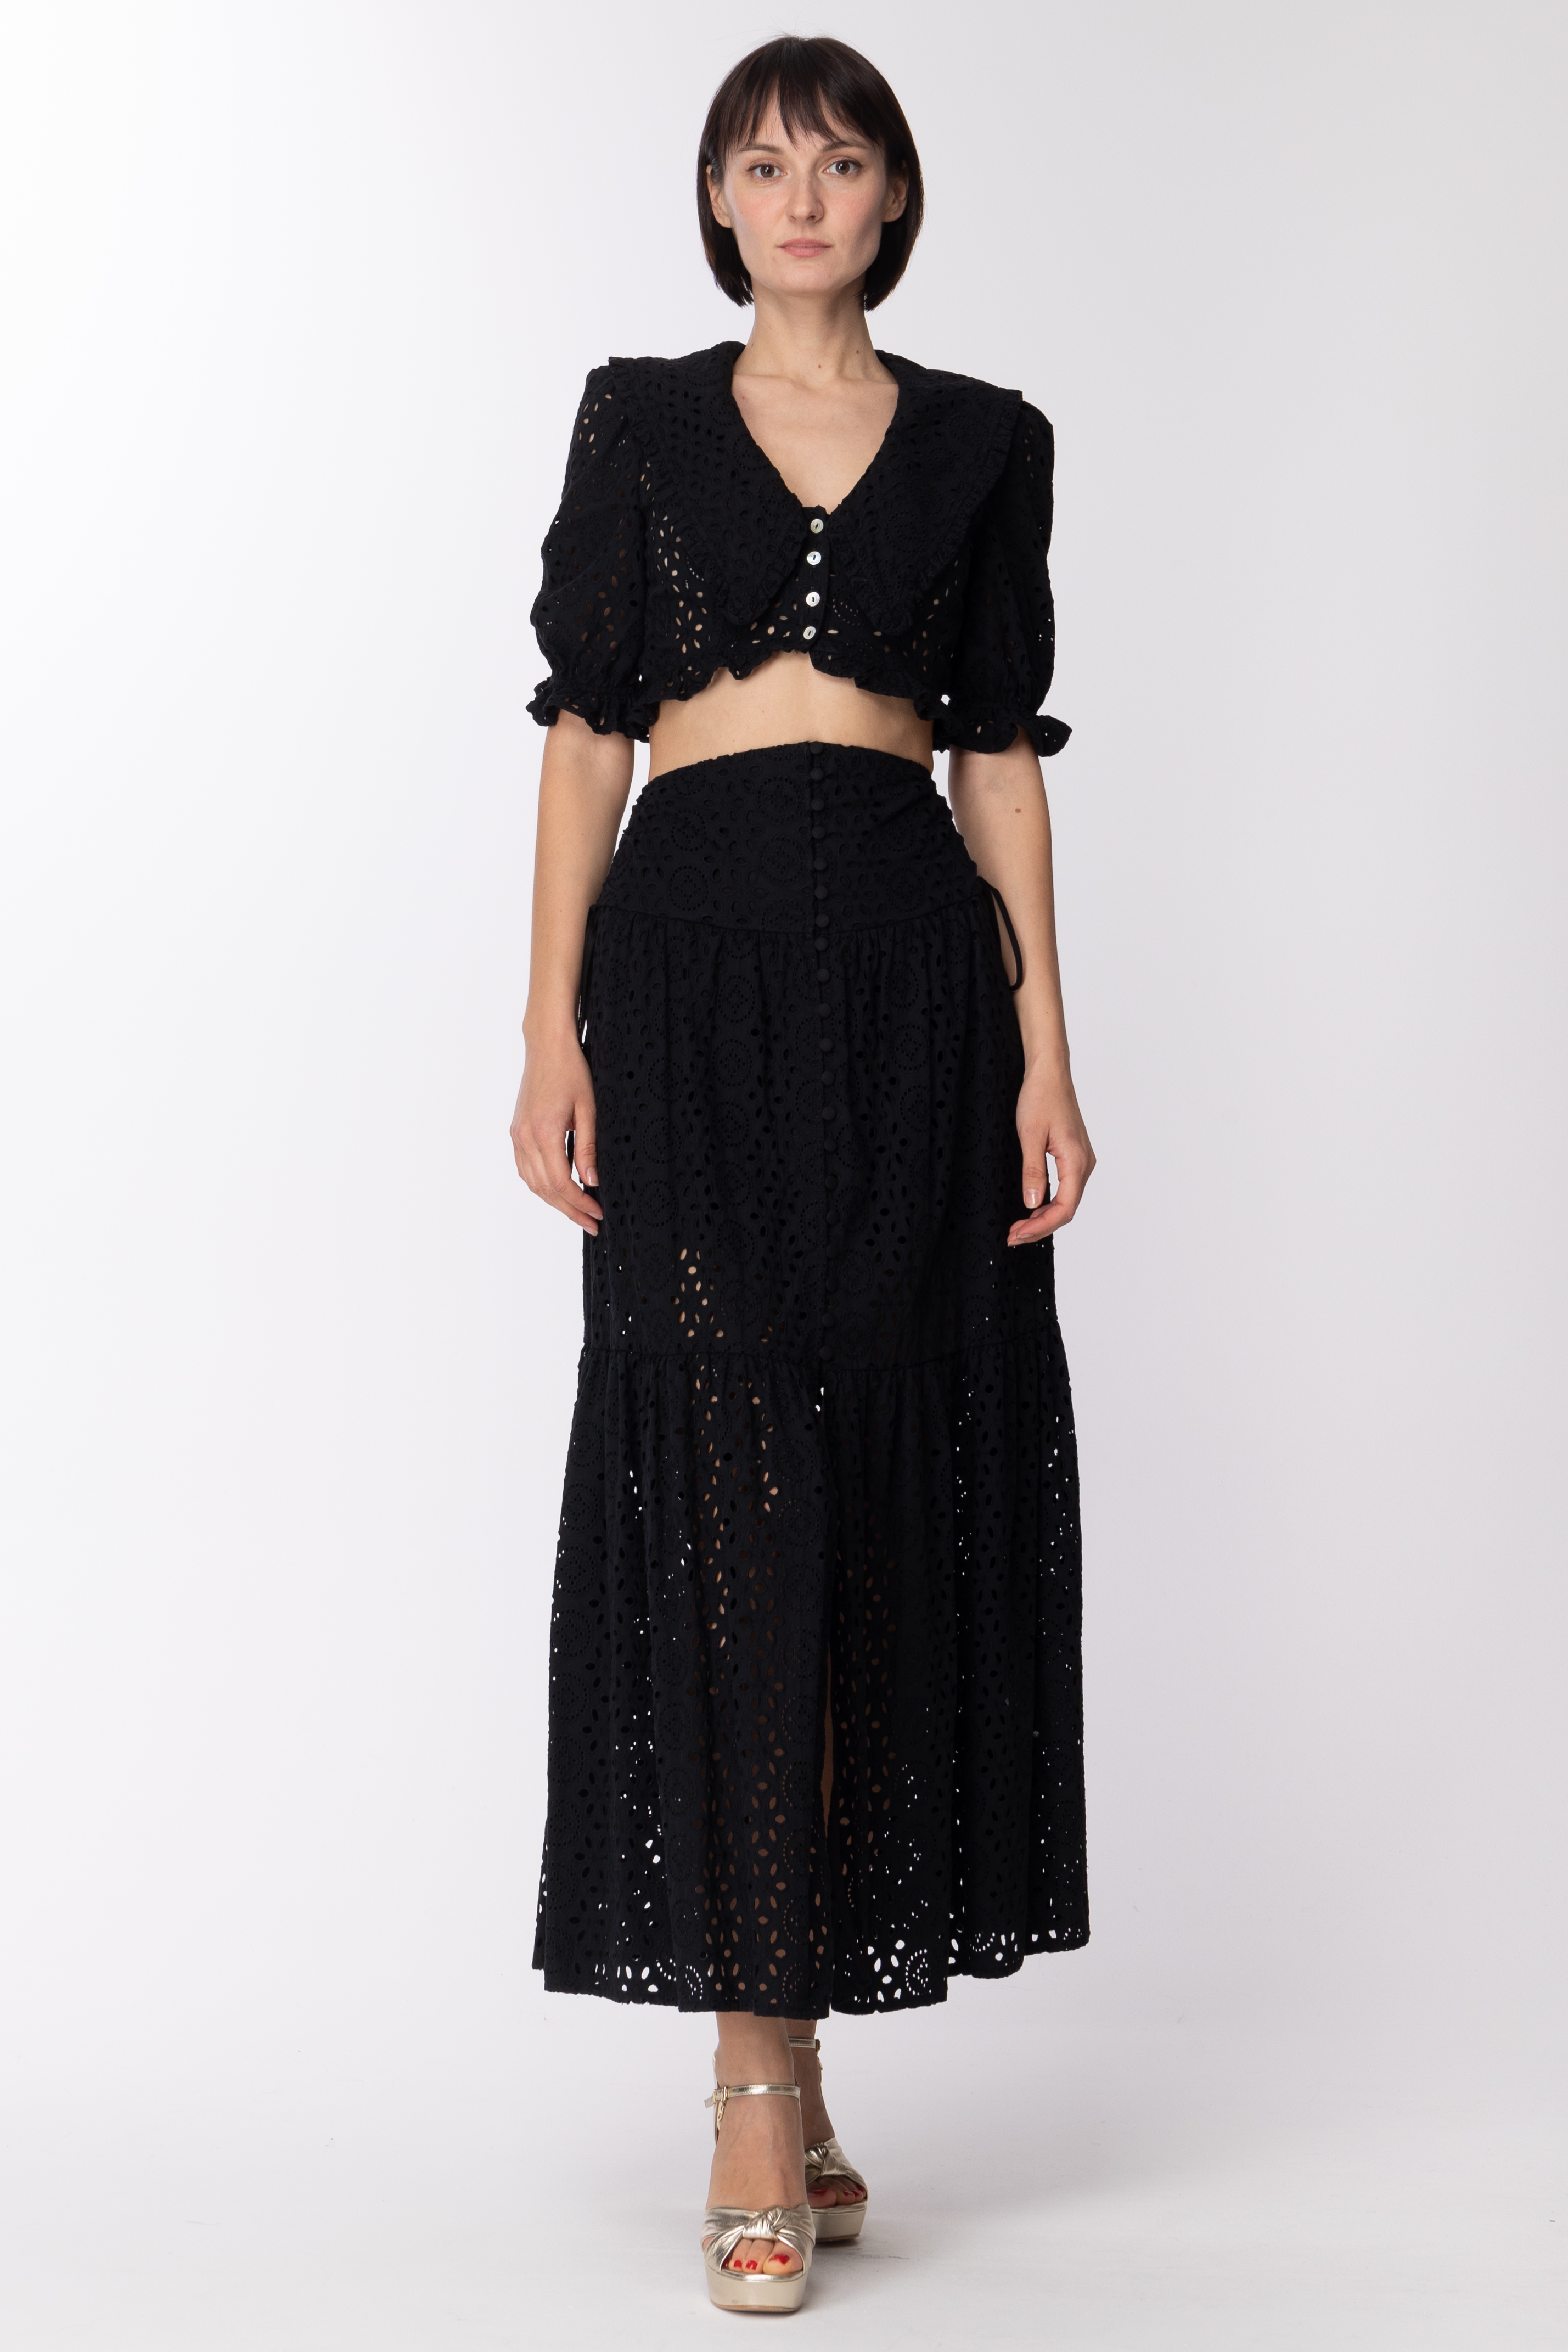 Vista previa: Aniye By Mirna falda larga con abertura y bordado inglés Black